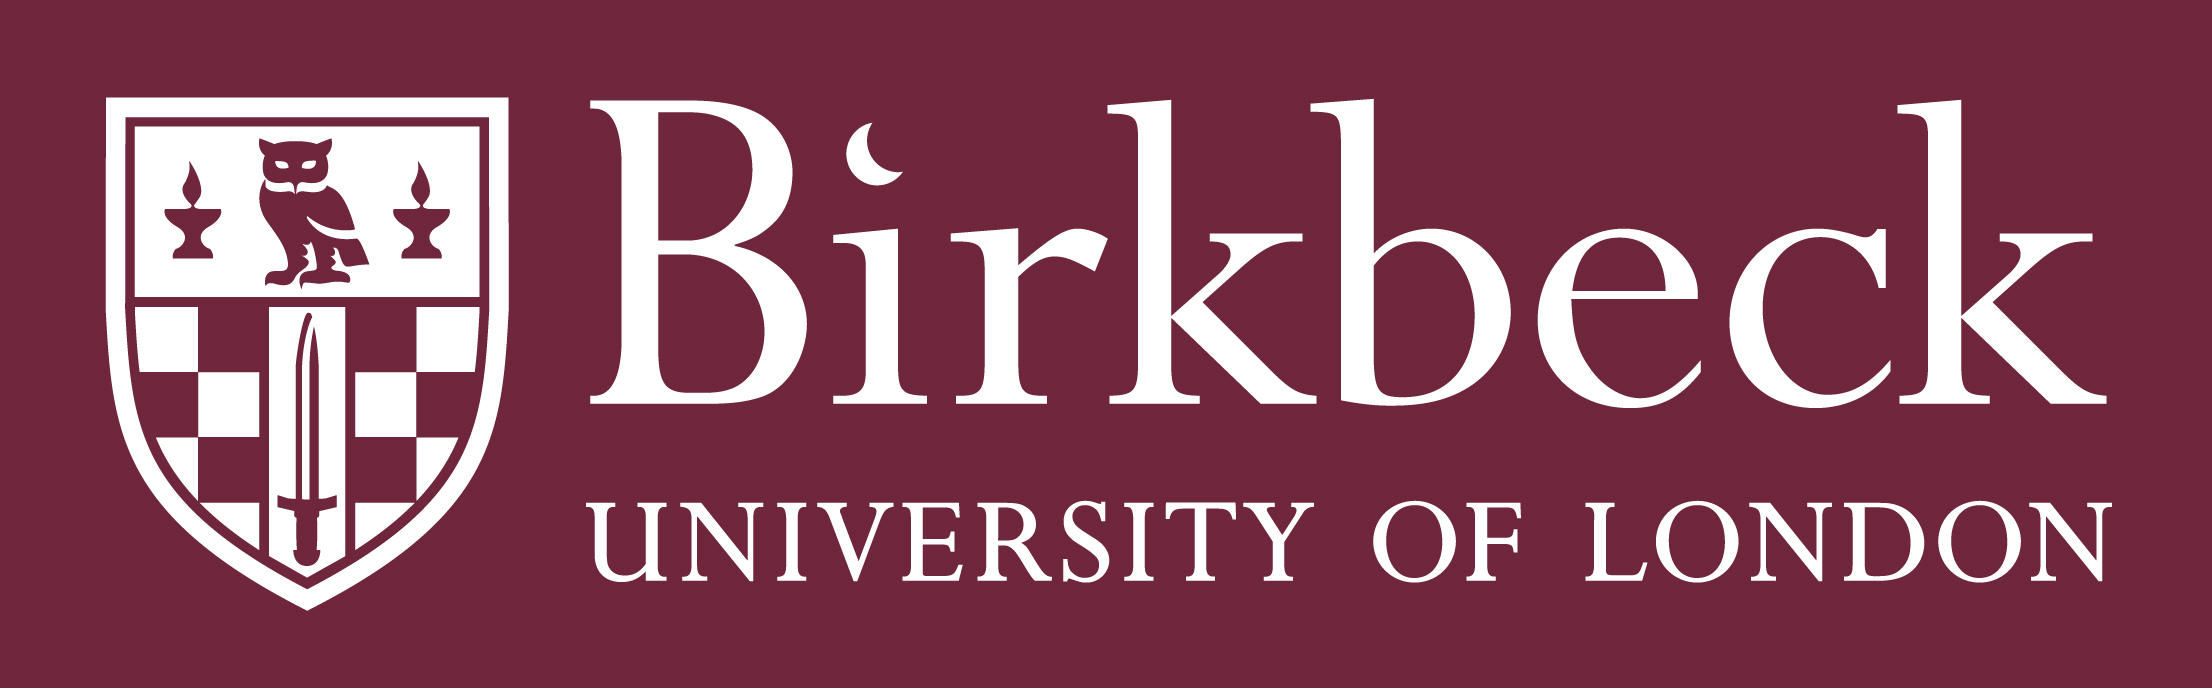 bbk-logo-burgundy-digi.jpg